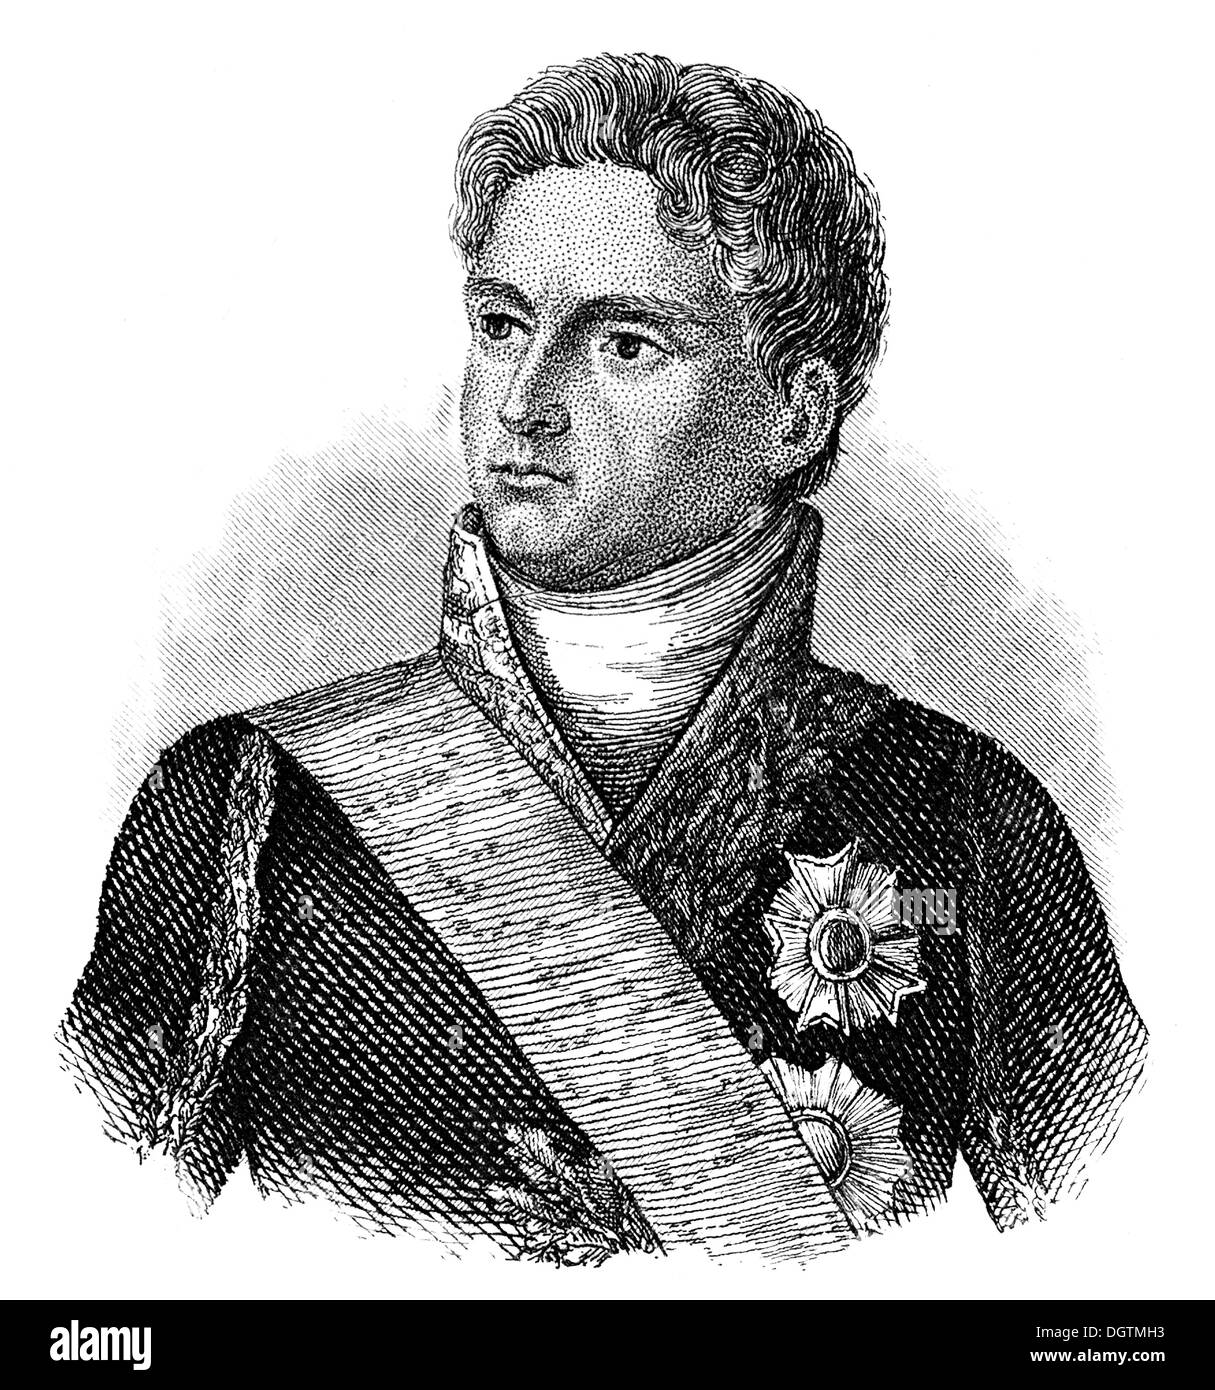 Alexandre Berthier, 1e Prince de Wagram, 1er duc de Valangin, 1er Prince Souverain de Neuchâtel, 1753 - 1815, maréchal de France Banque D'Images